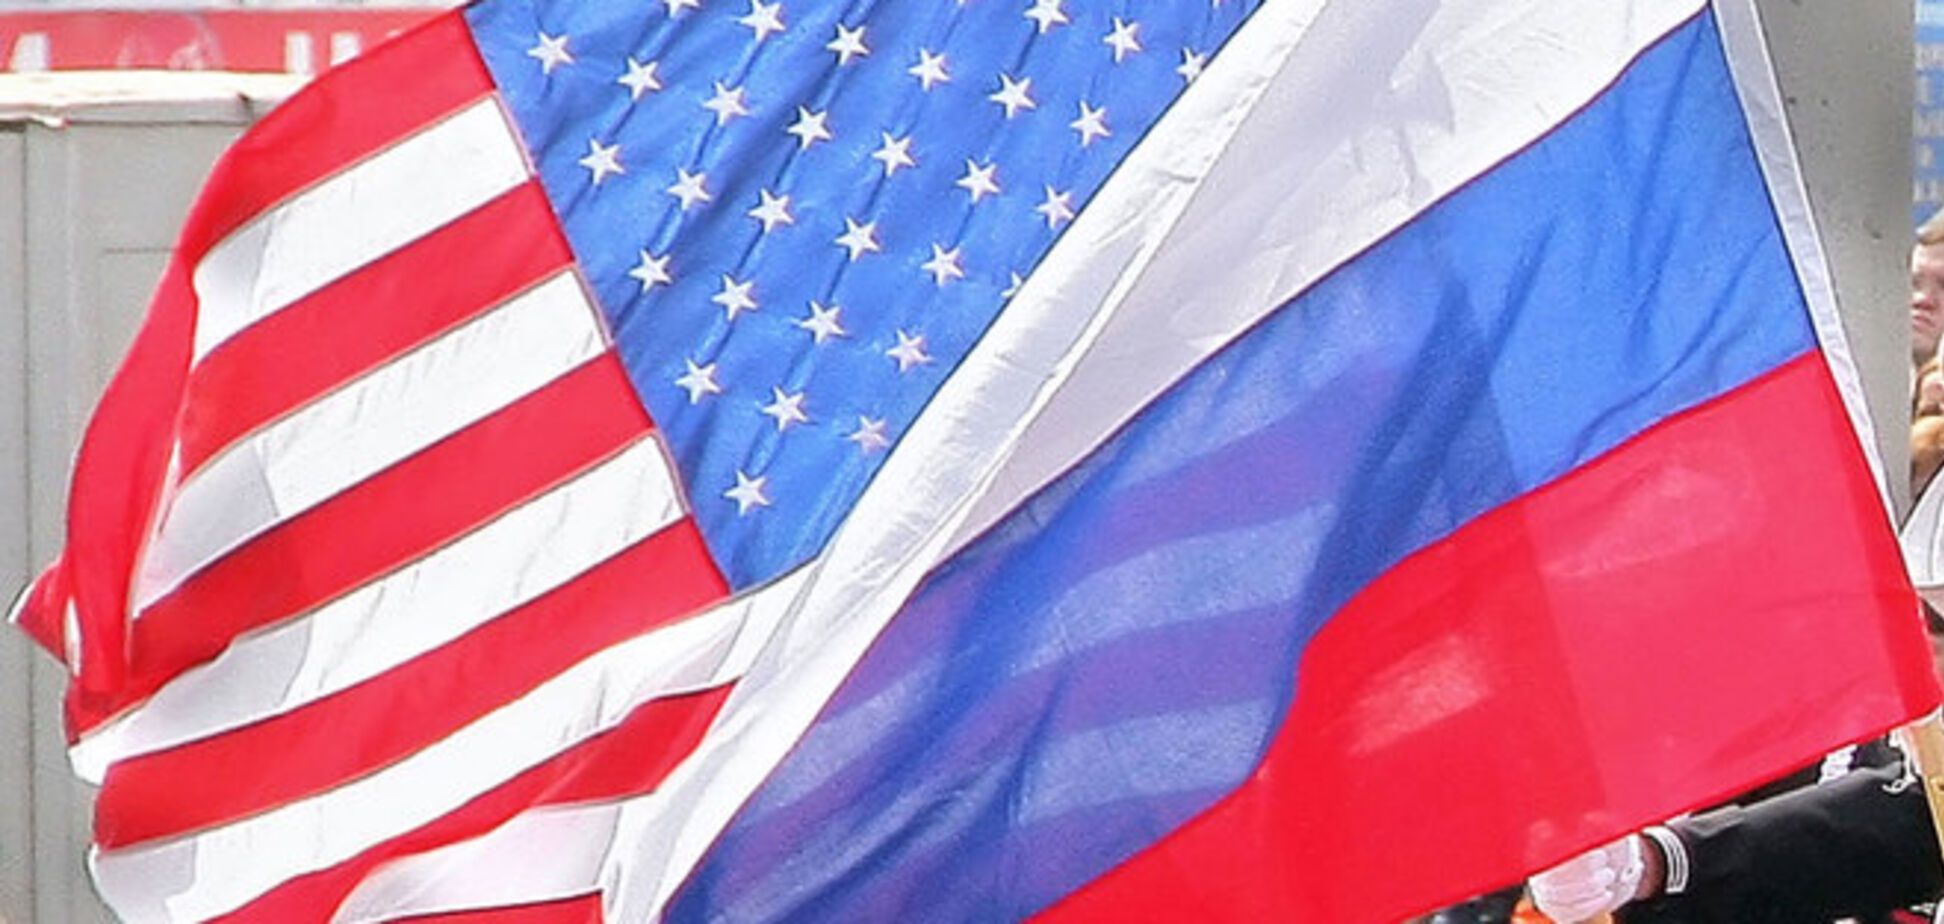 Замглавы Минфина США едет в Европу обсудить санкции против России